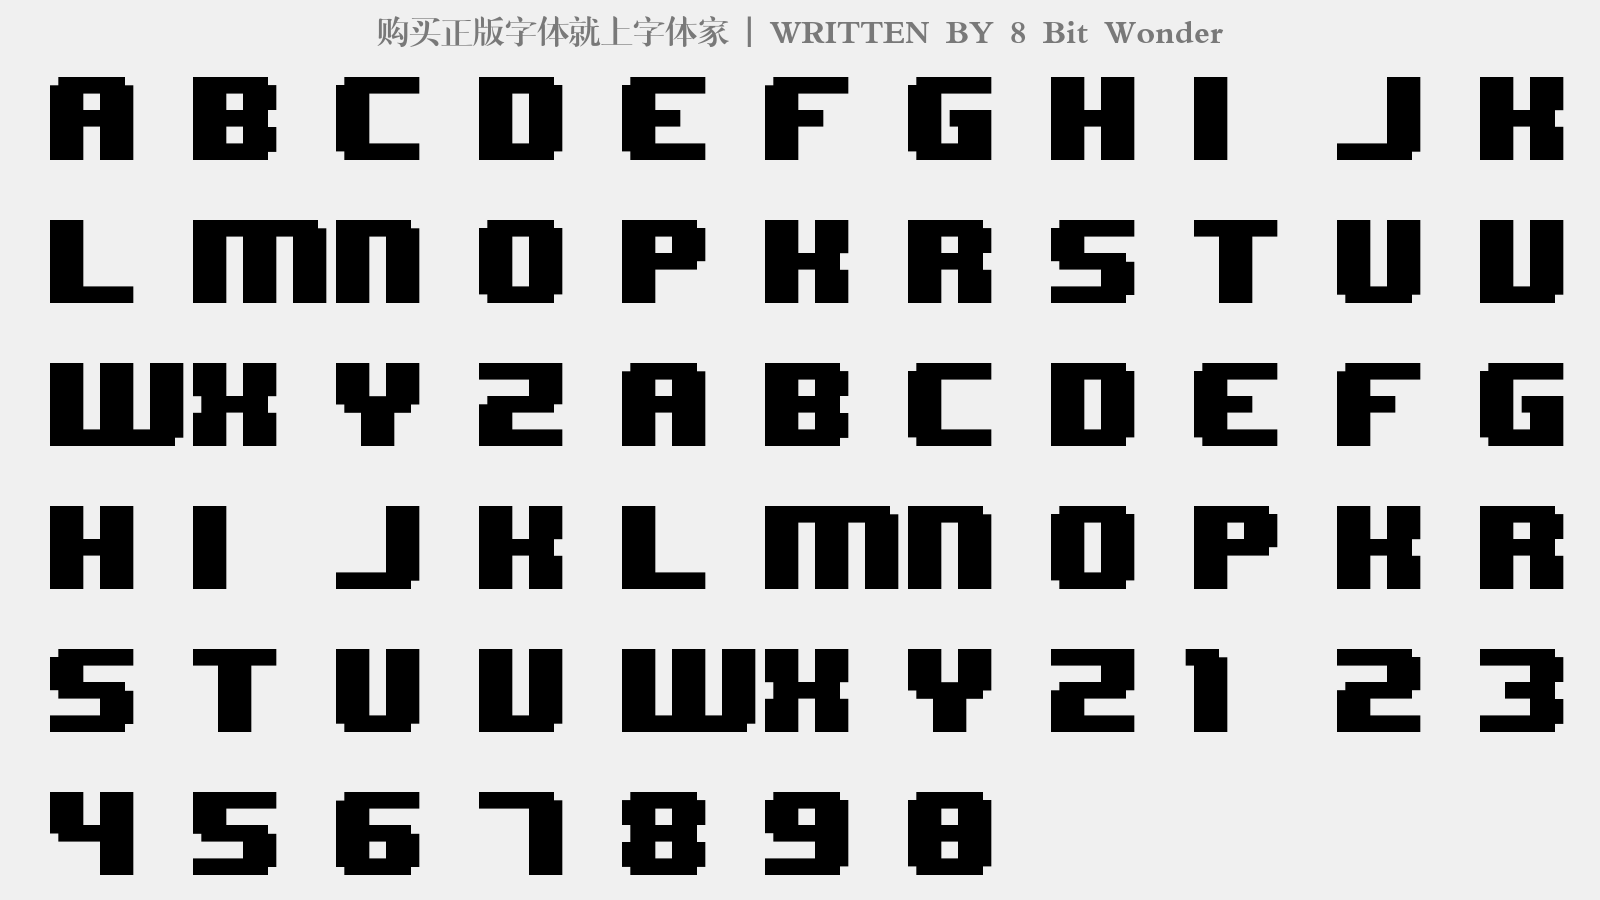 8 Bit Wonder - 大写字母/小写字母/数字